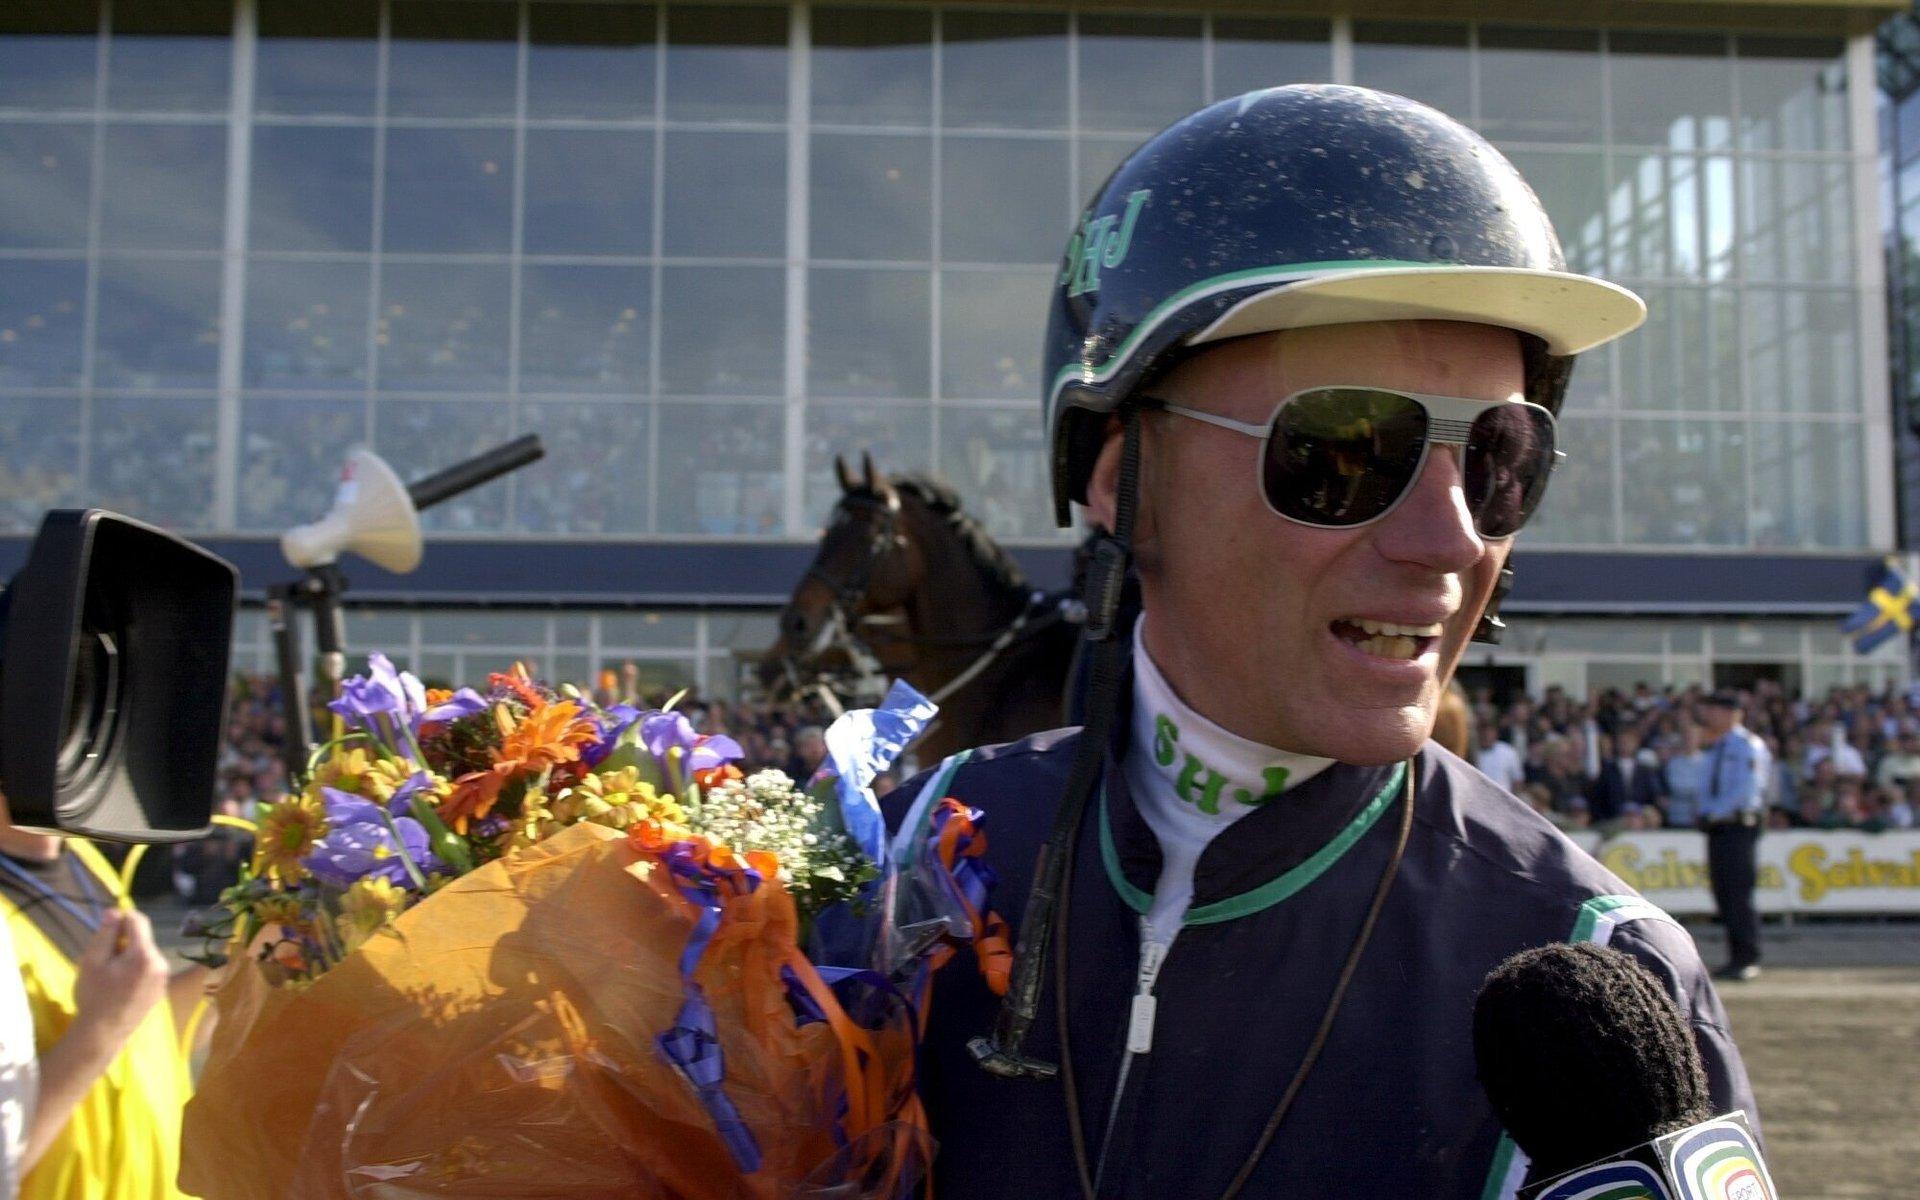 Stig H Johansson är den segerrikaste kusken i Elitloppet genom tiderna med fem vinster. Här efter segern med legendariska hästen Victory Tilly 2000.